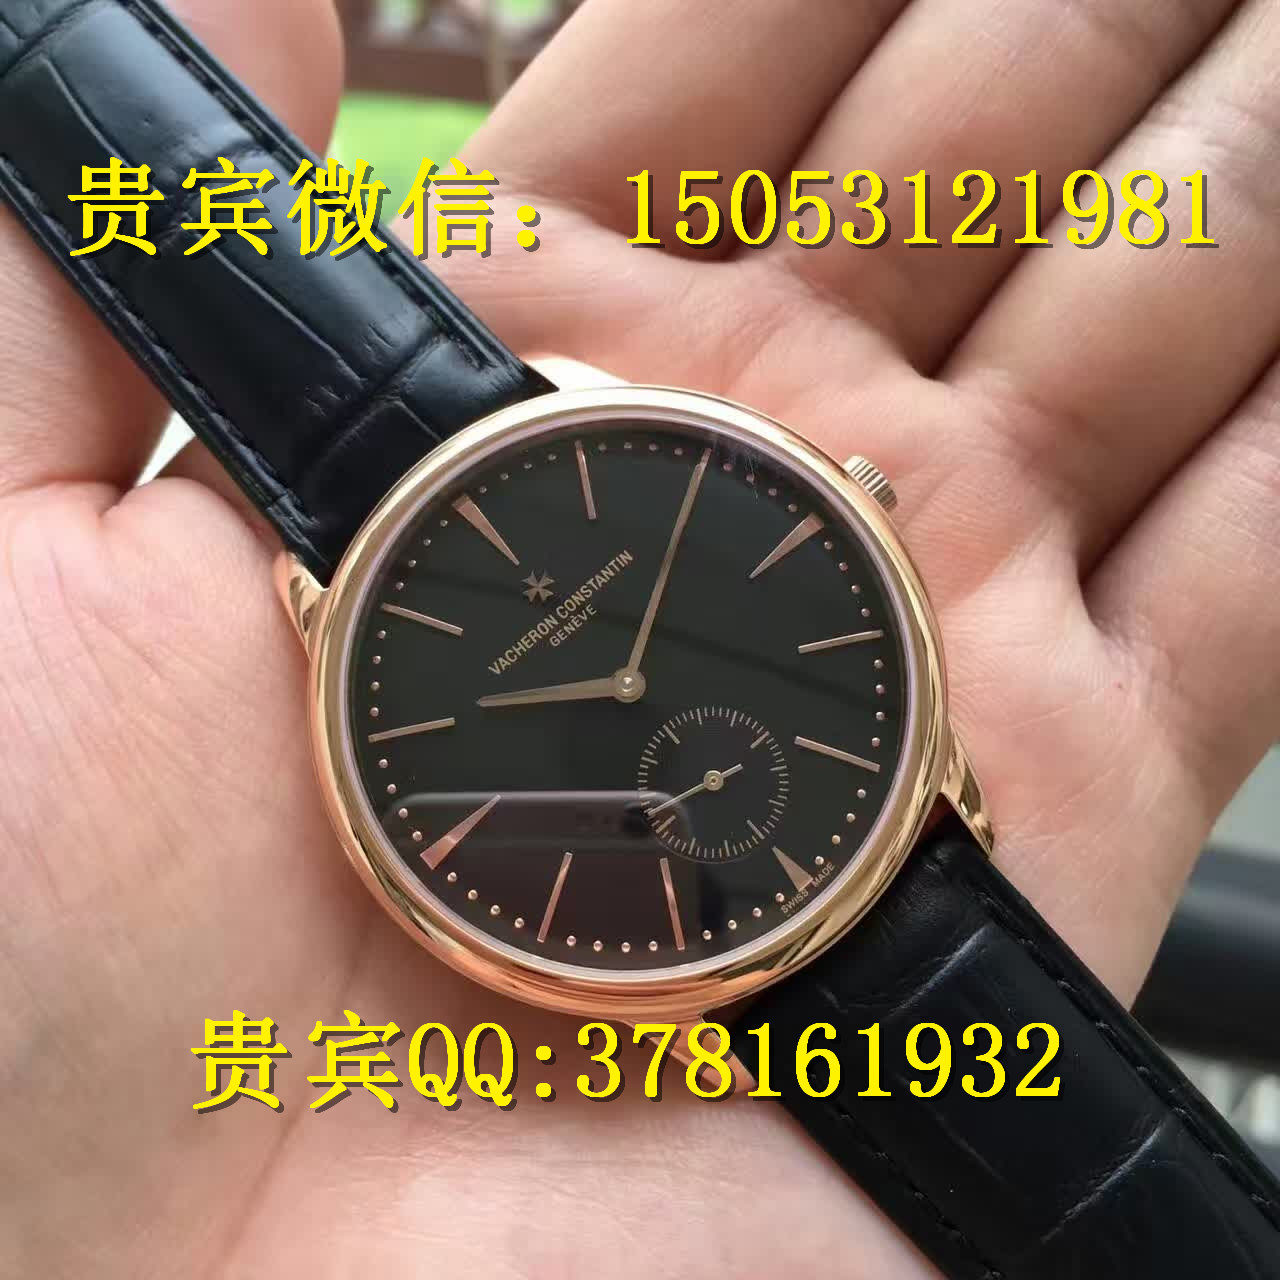 江诗丹顿机械手表价格及图片哪里有卖江诗丹顿手表的瑞士顶级名表